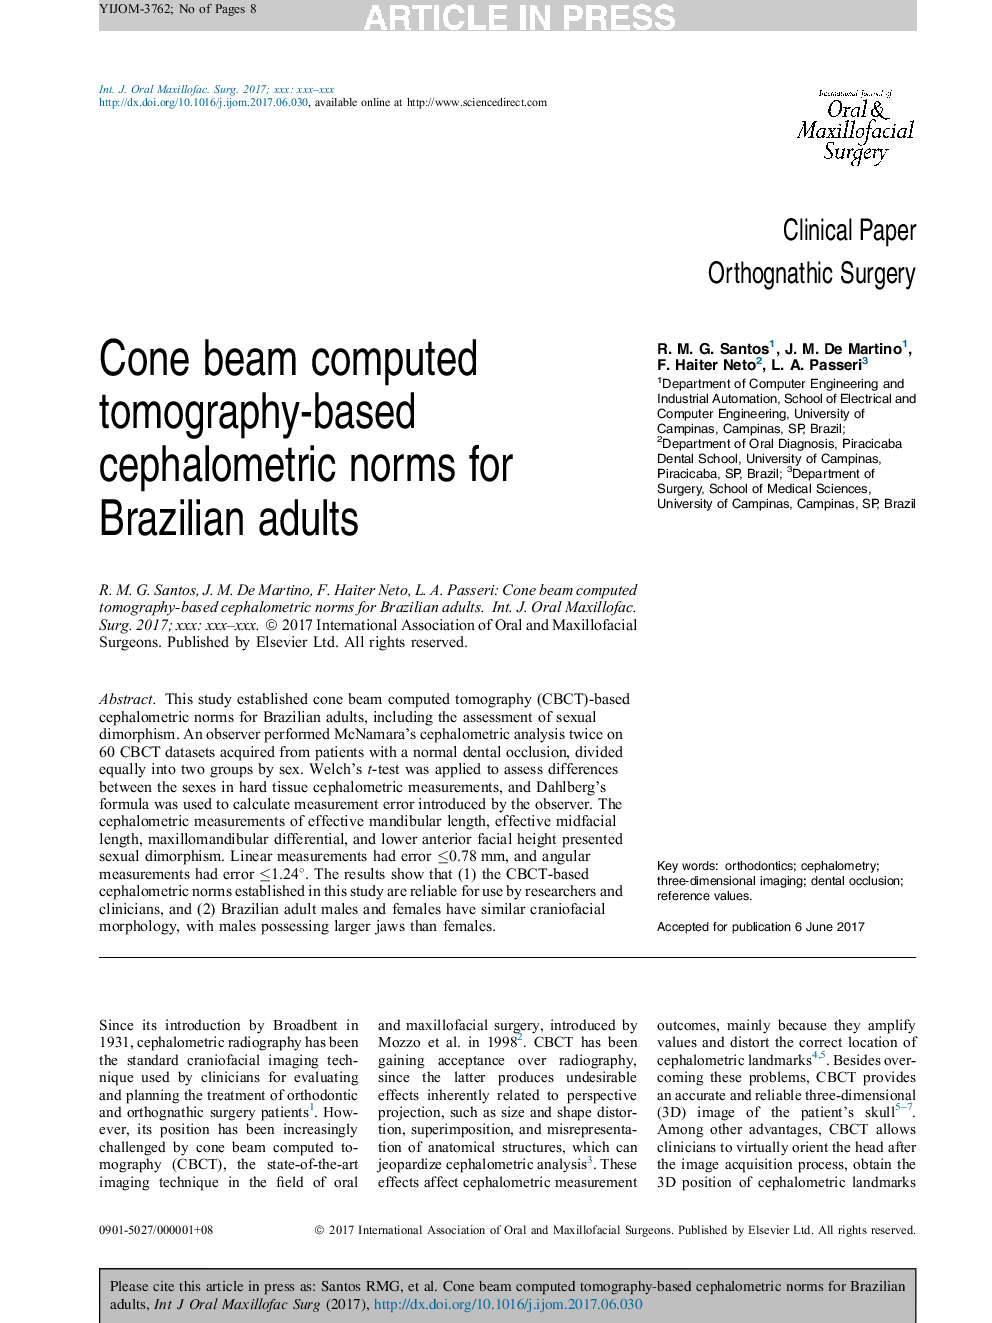 پرتو مخروطی هورمون های سفالومتری بر اساس توموگرافی کامپیوتری برای بزرگسالان برزیل 